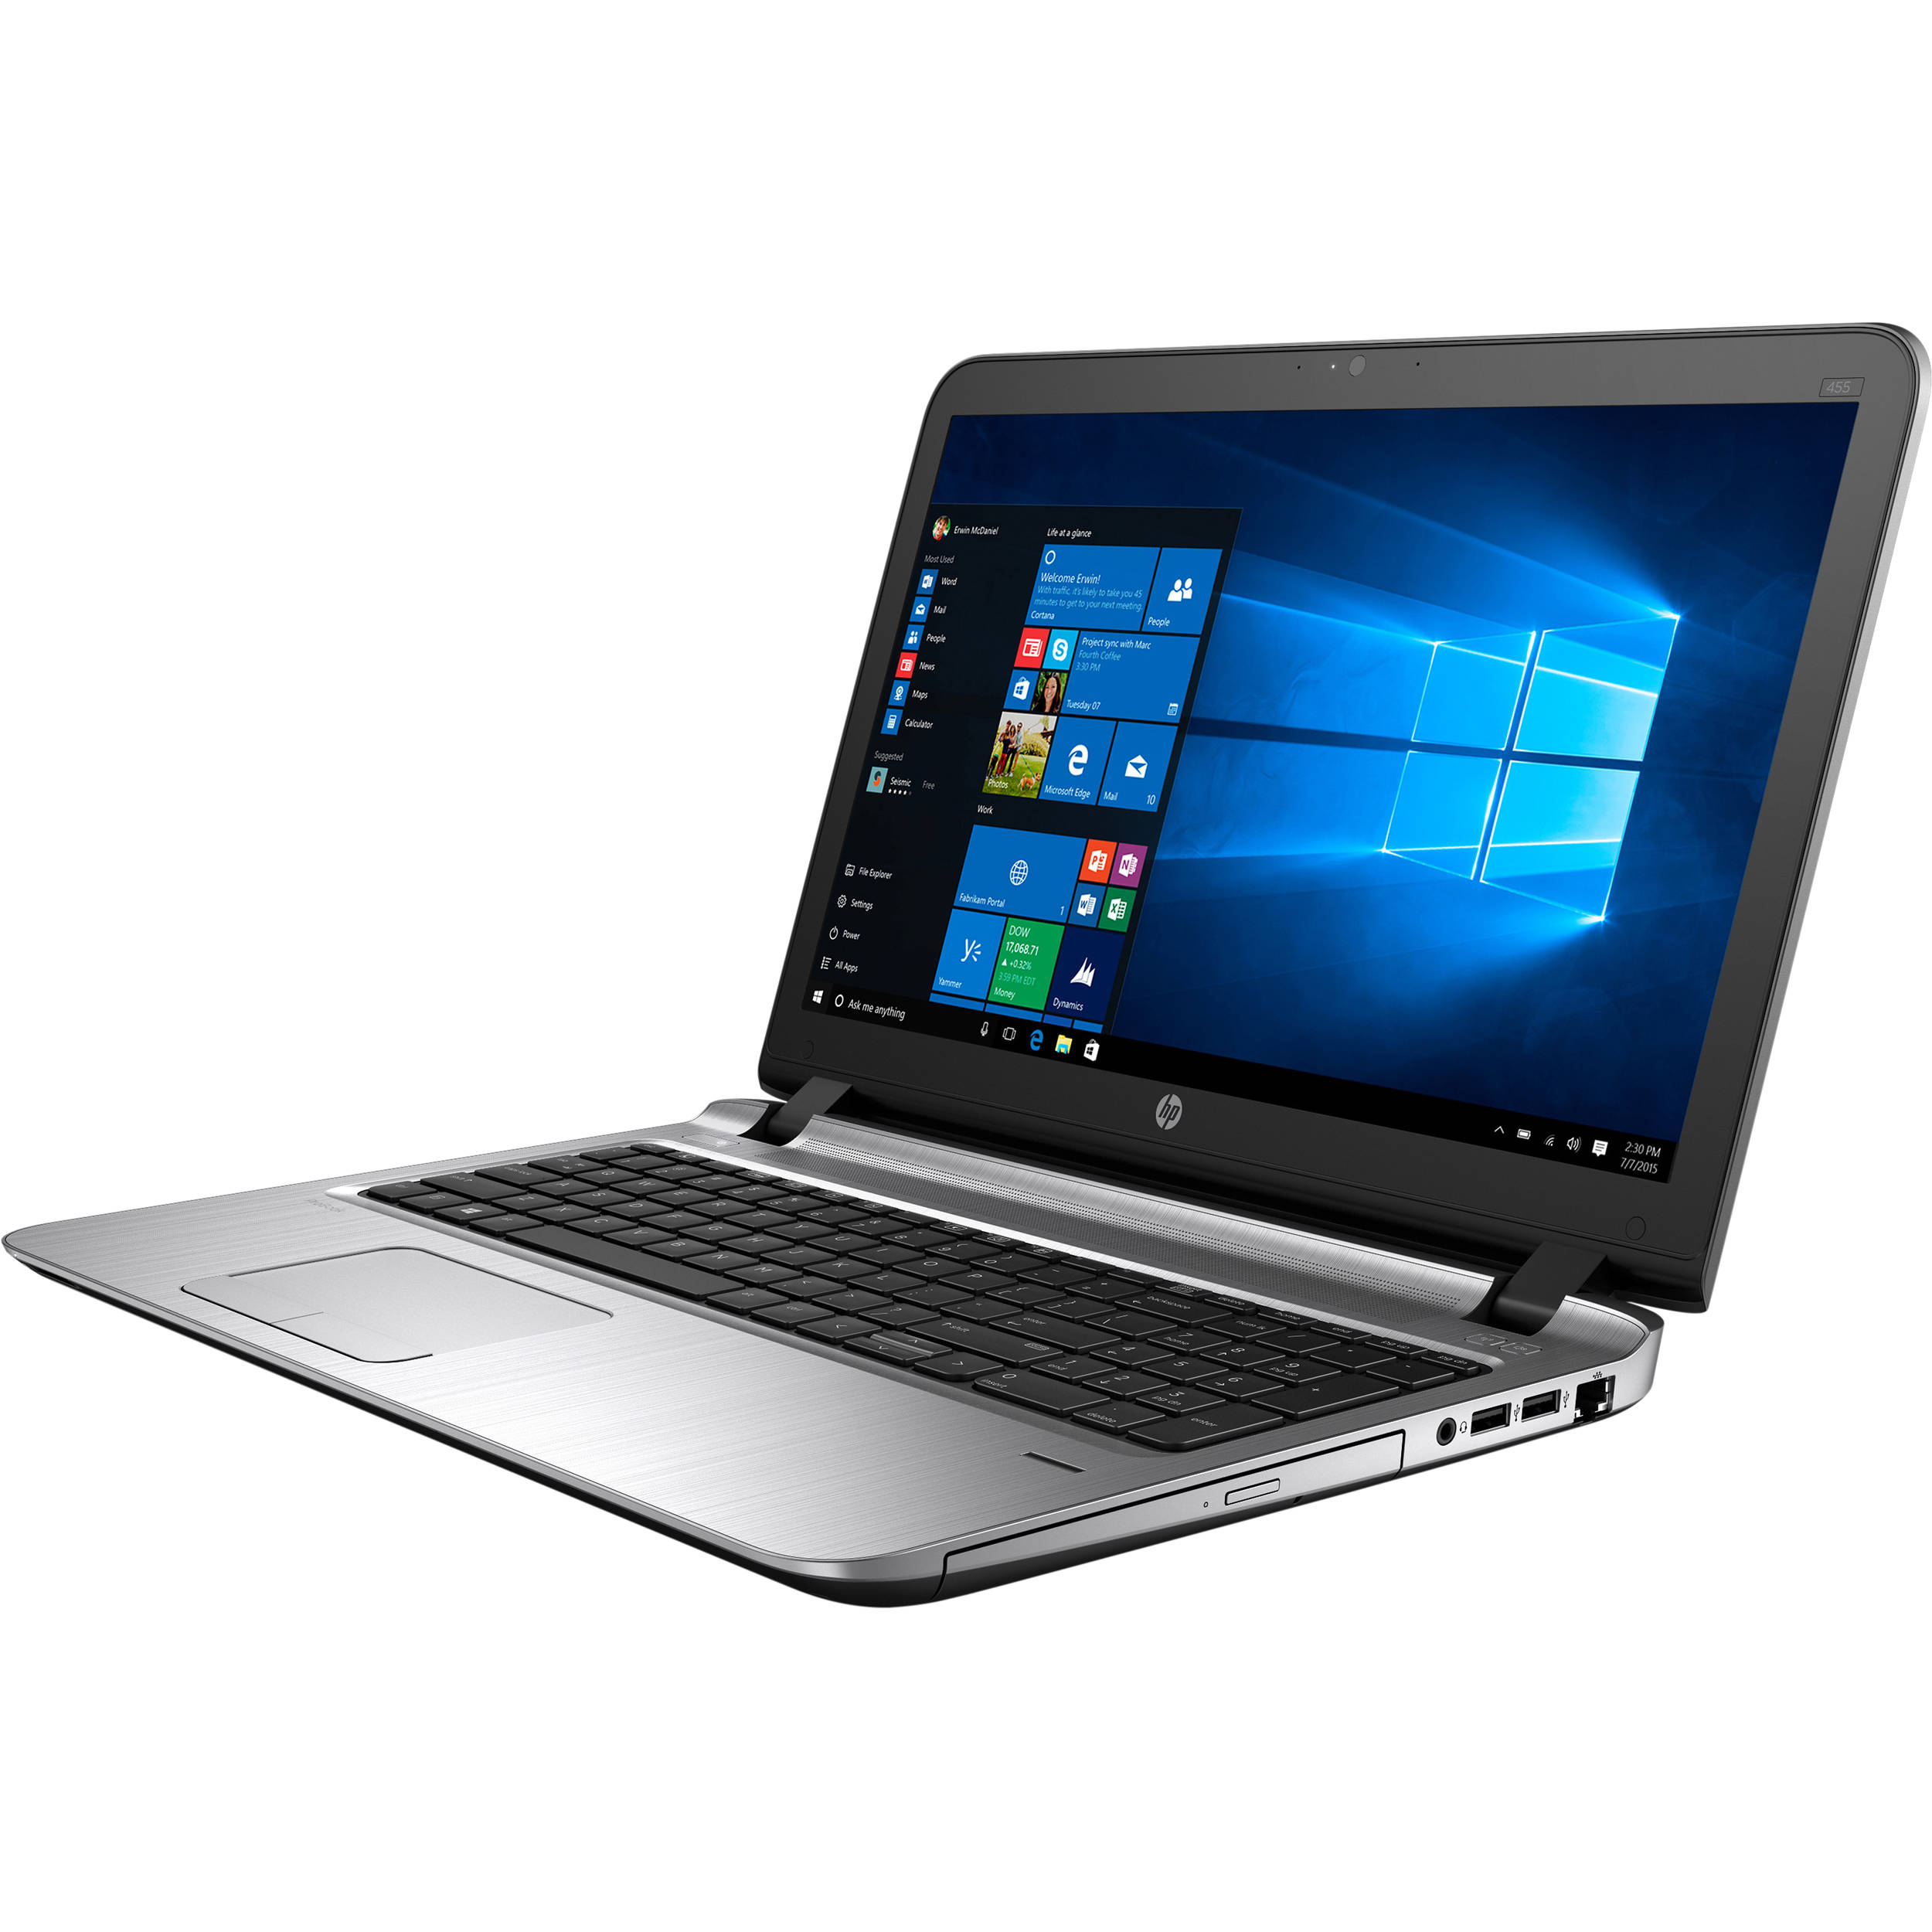 ProBook 455 G3 Notebook PC